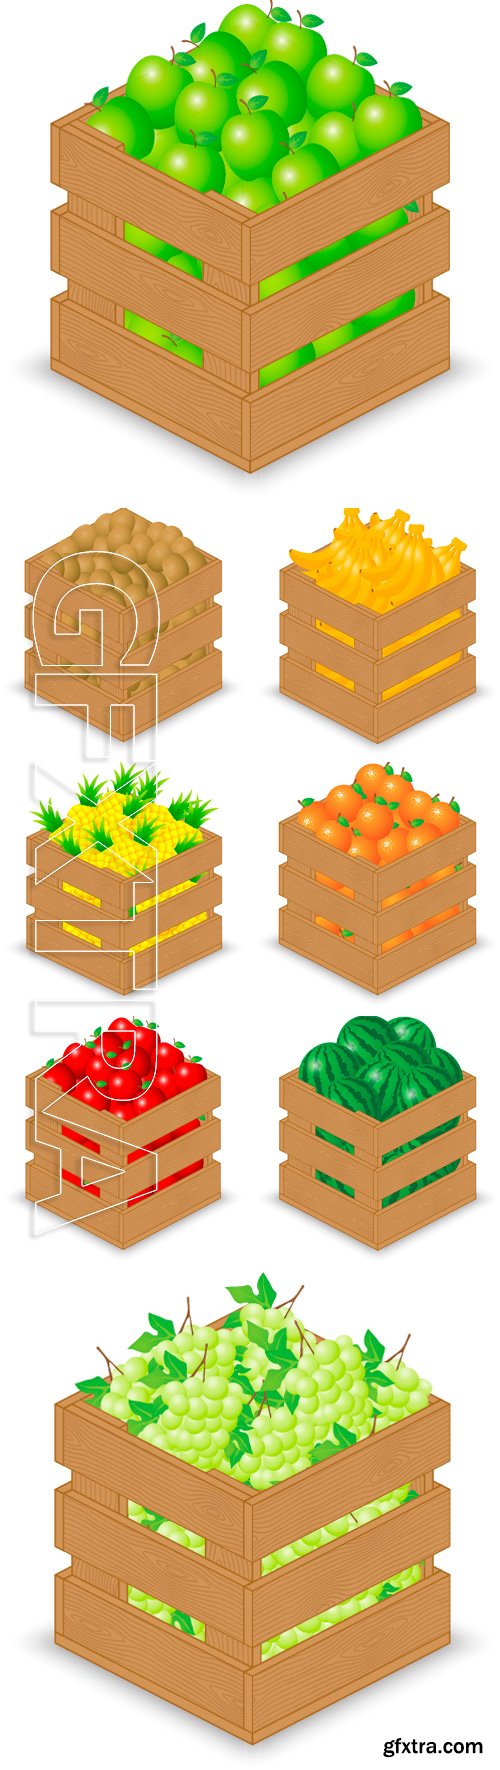 Stock Vectors - Food wooden crate